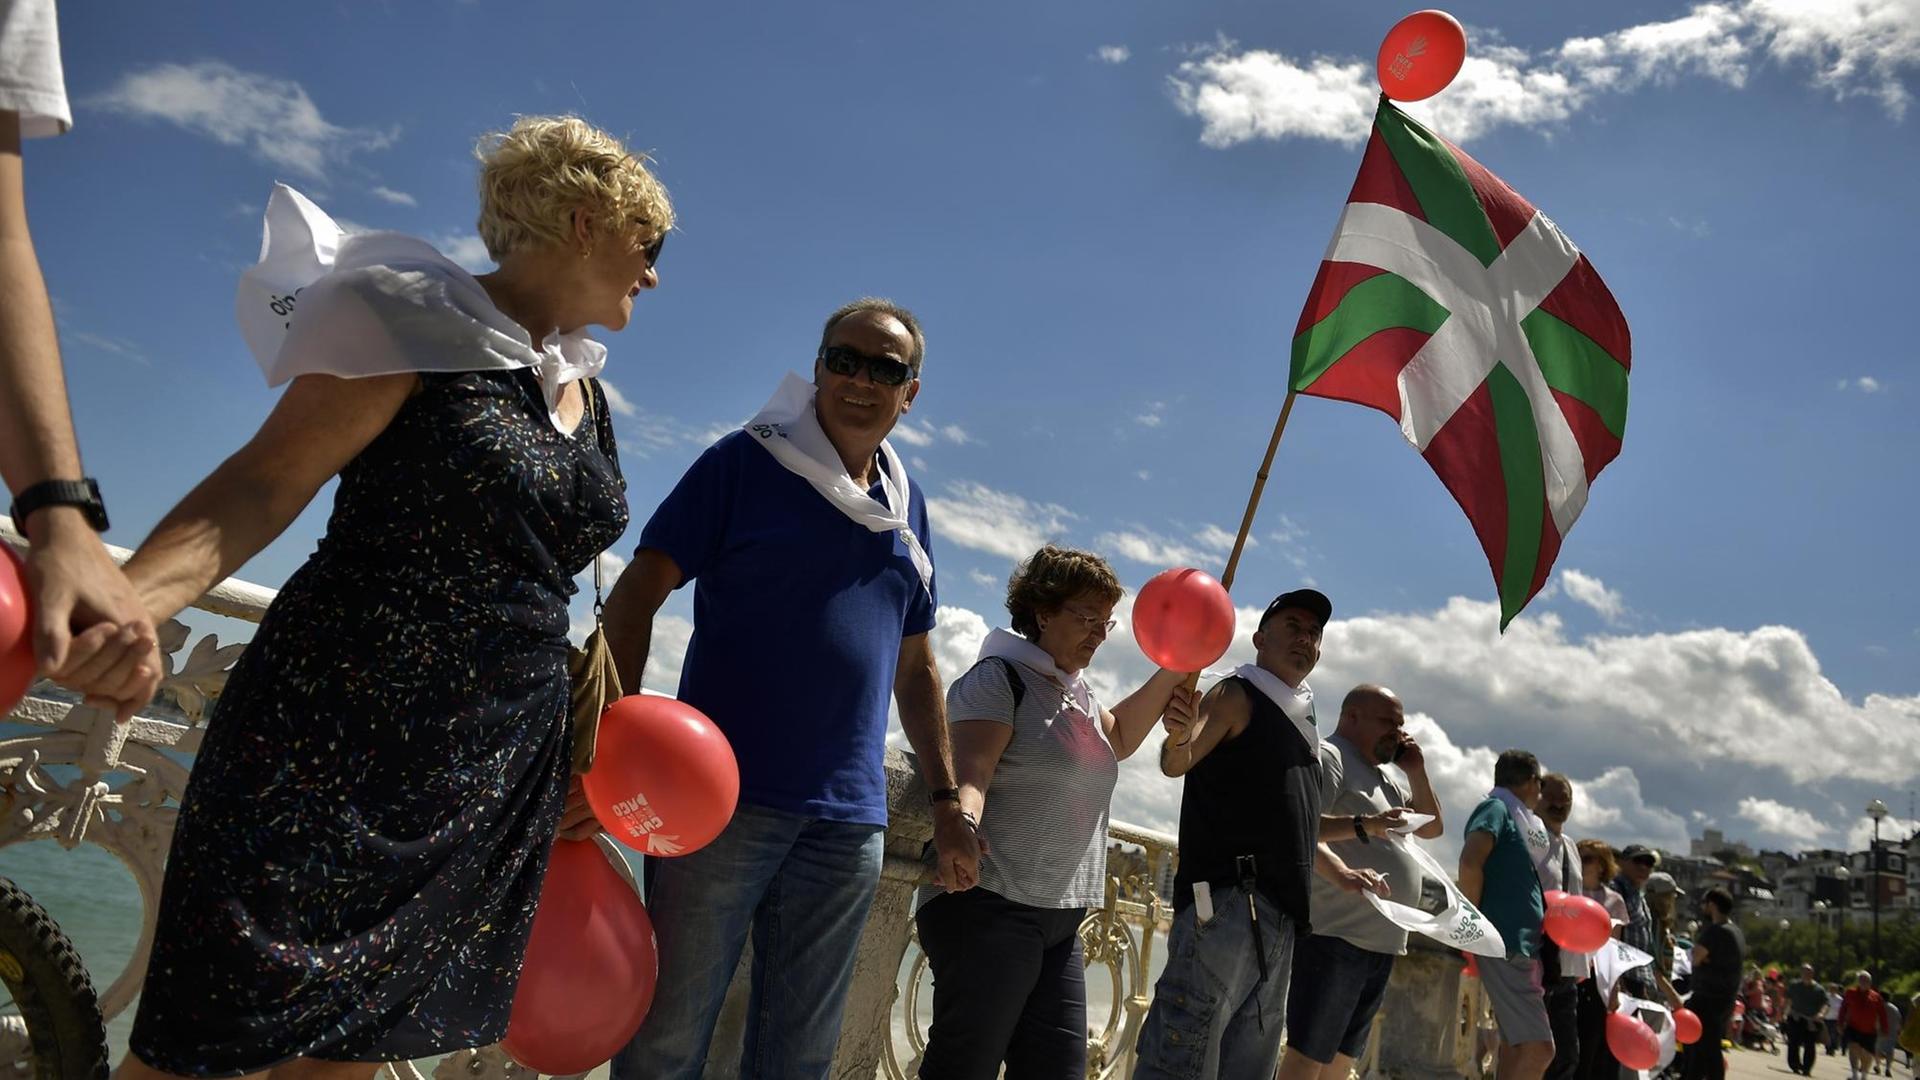 Spanien, San Sebastian: Ein Mann hält eine baskische Flagge, während er mit tausenden anderen Demonstranten am Strand von La Concha eine Menschenkette bildet und für die Unabhängigkeit des Baskenlandes demonstriert.